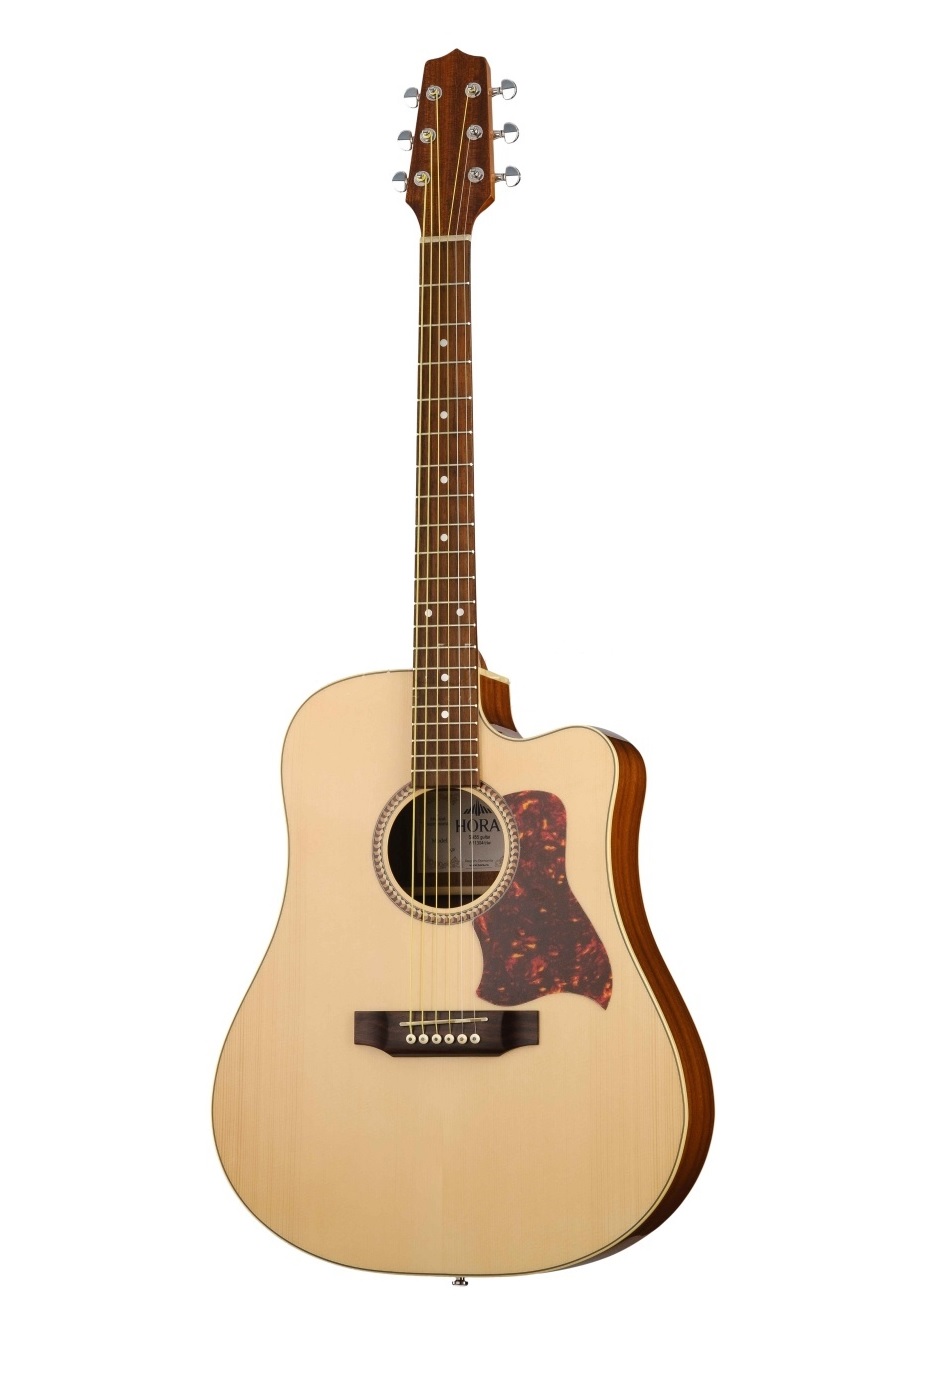 Акустические гитары Hora W11304ctw SM55 гитара акустическая дерево 97см с вырезом